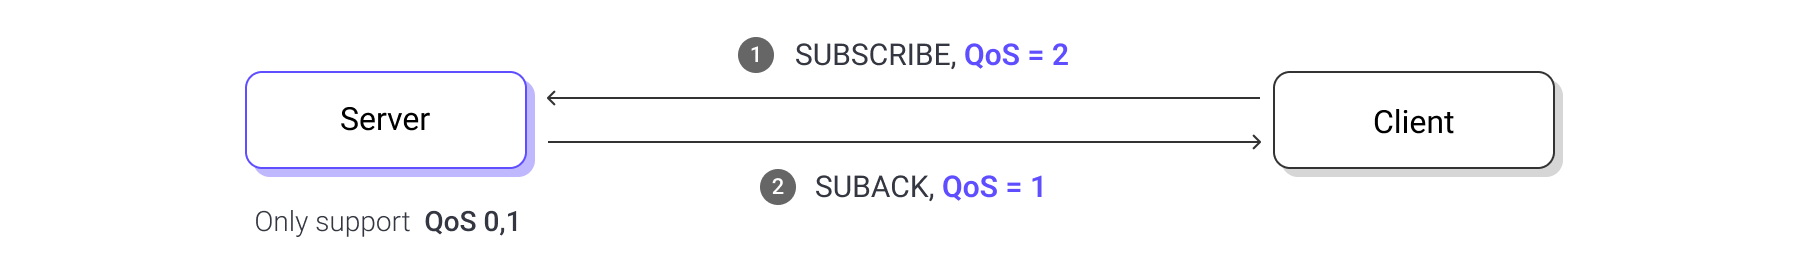 qos down grade when subscribe